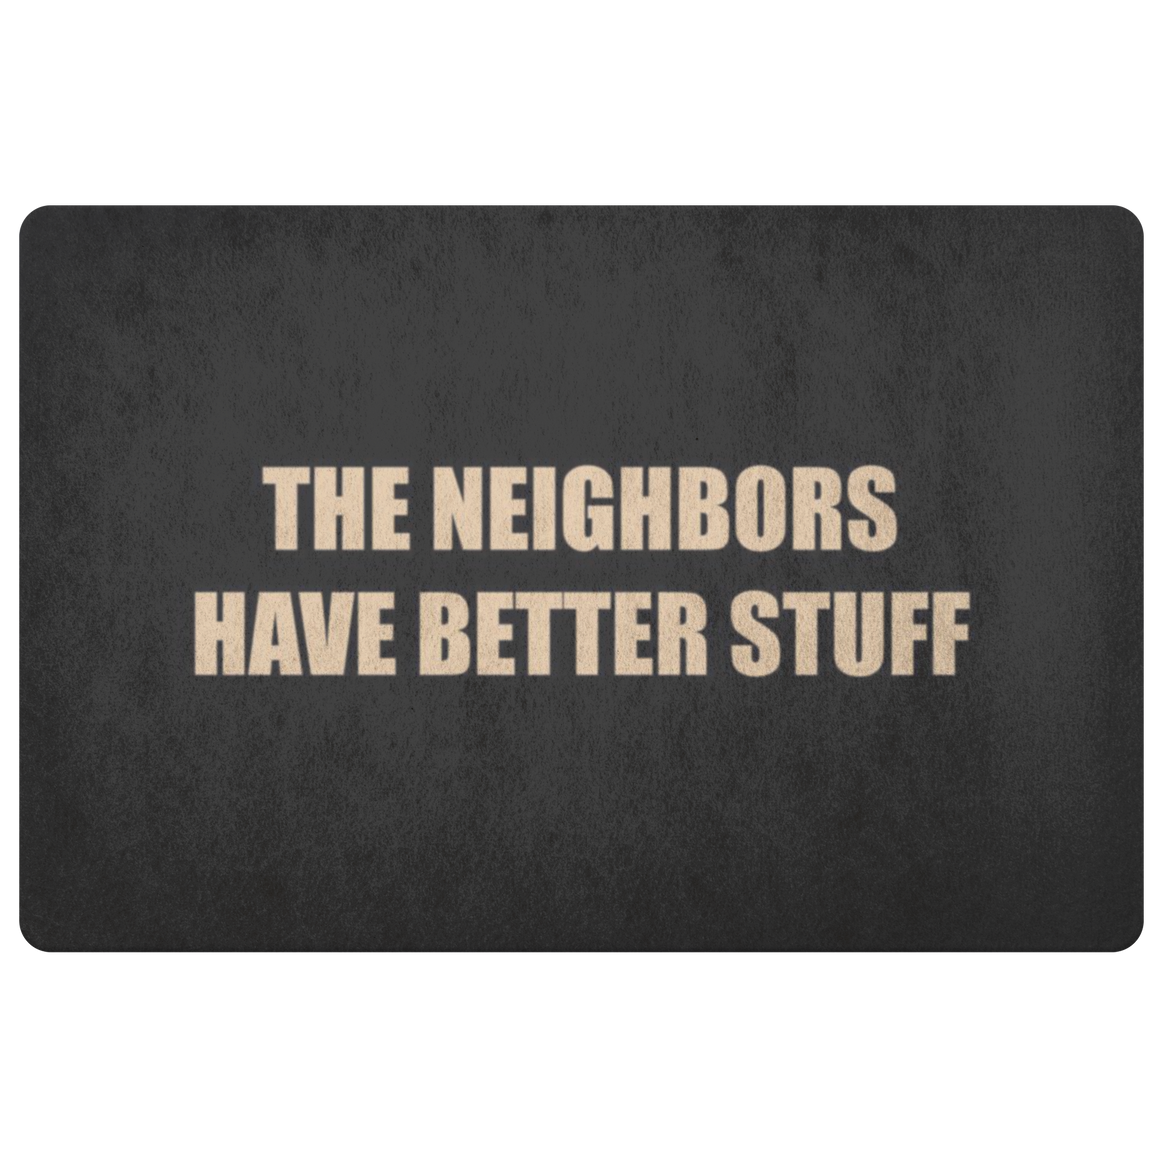 The neighbors have better stuff - doormat